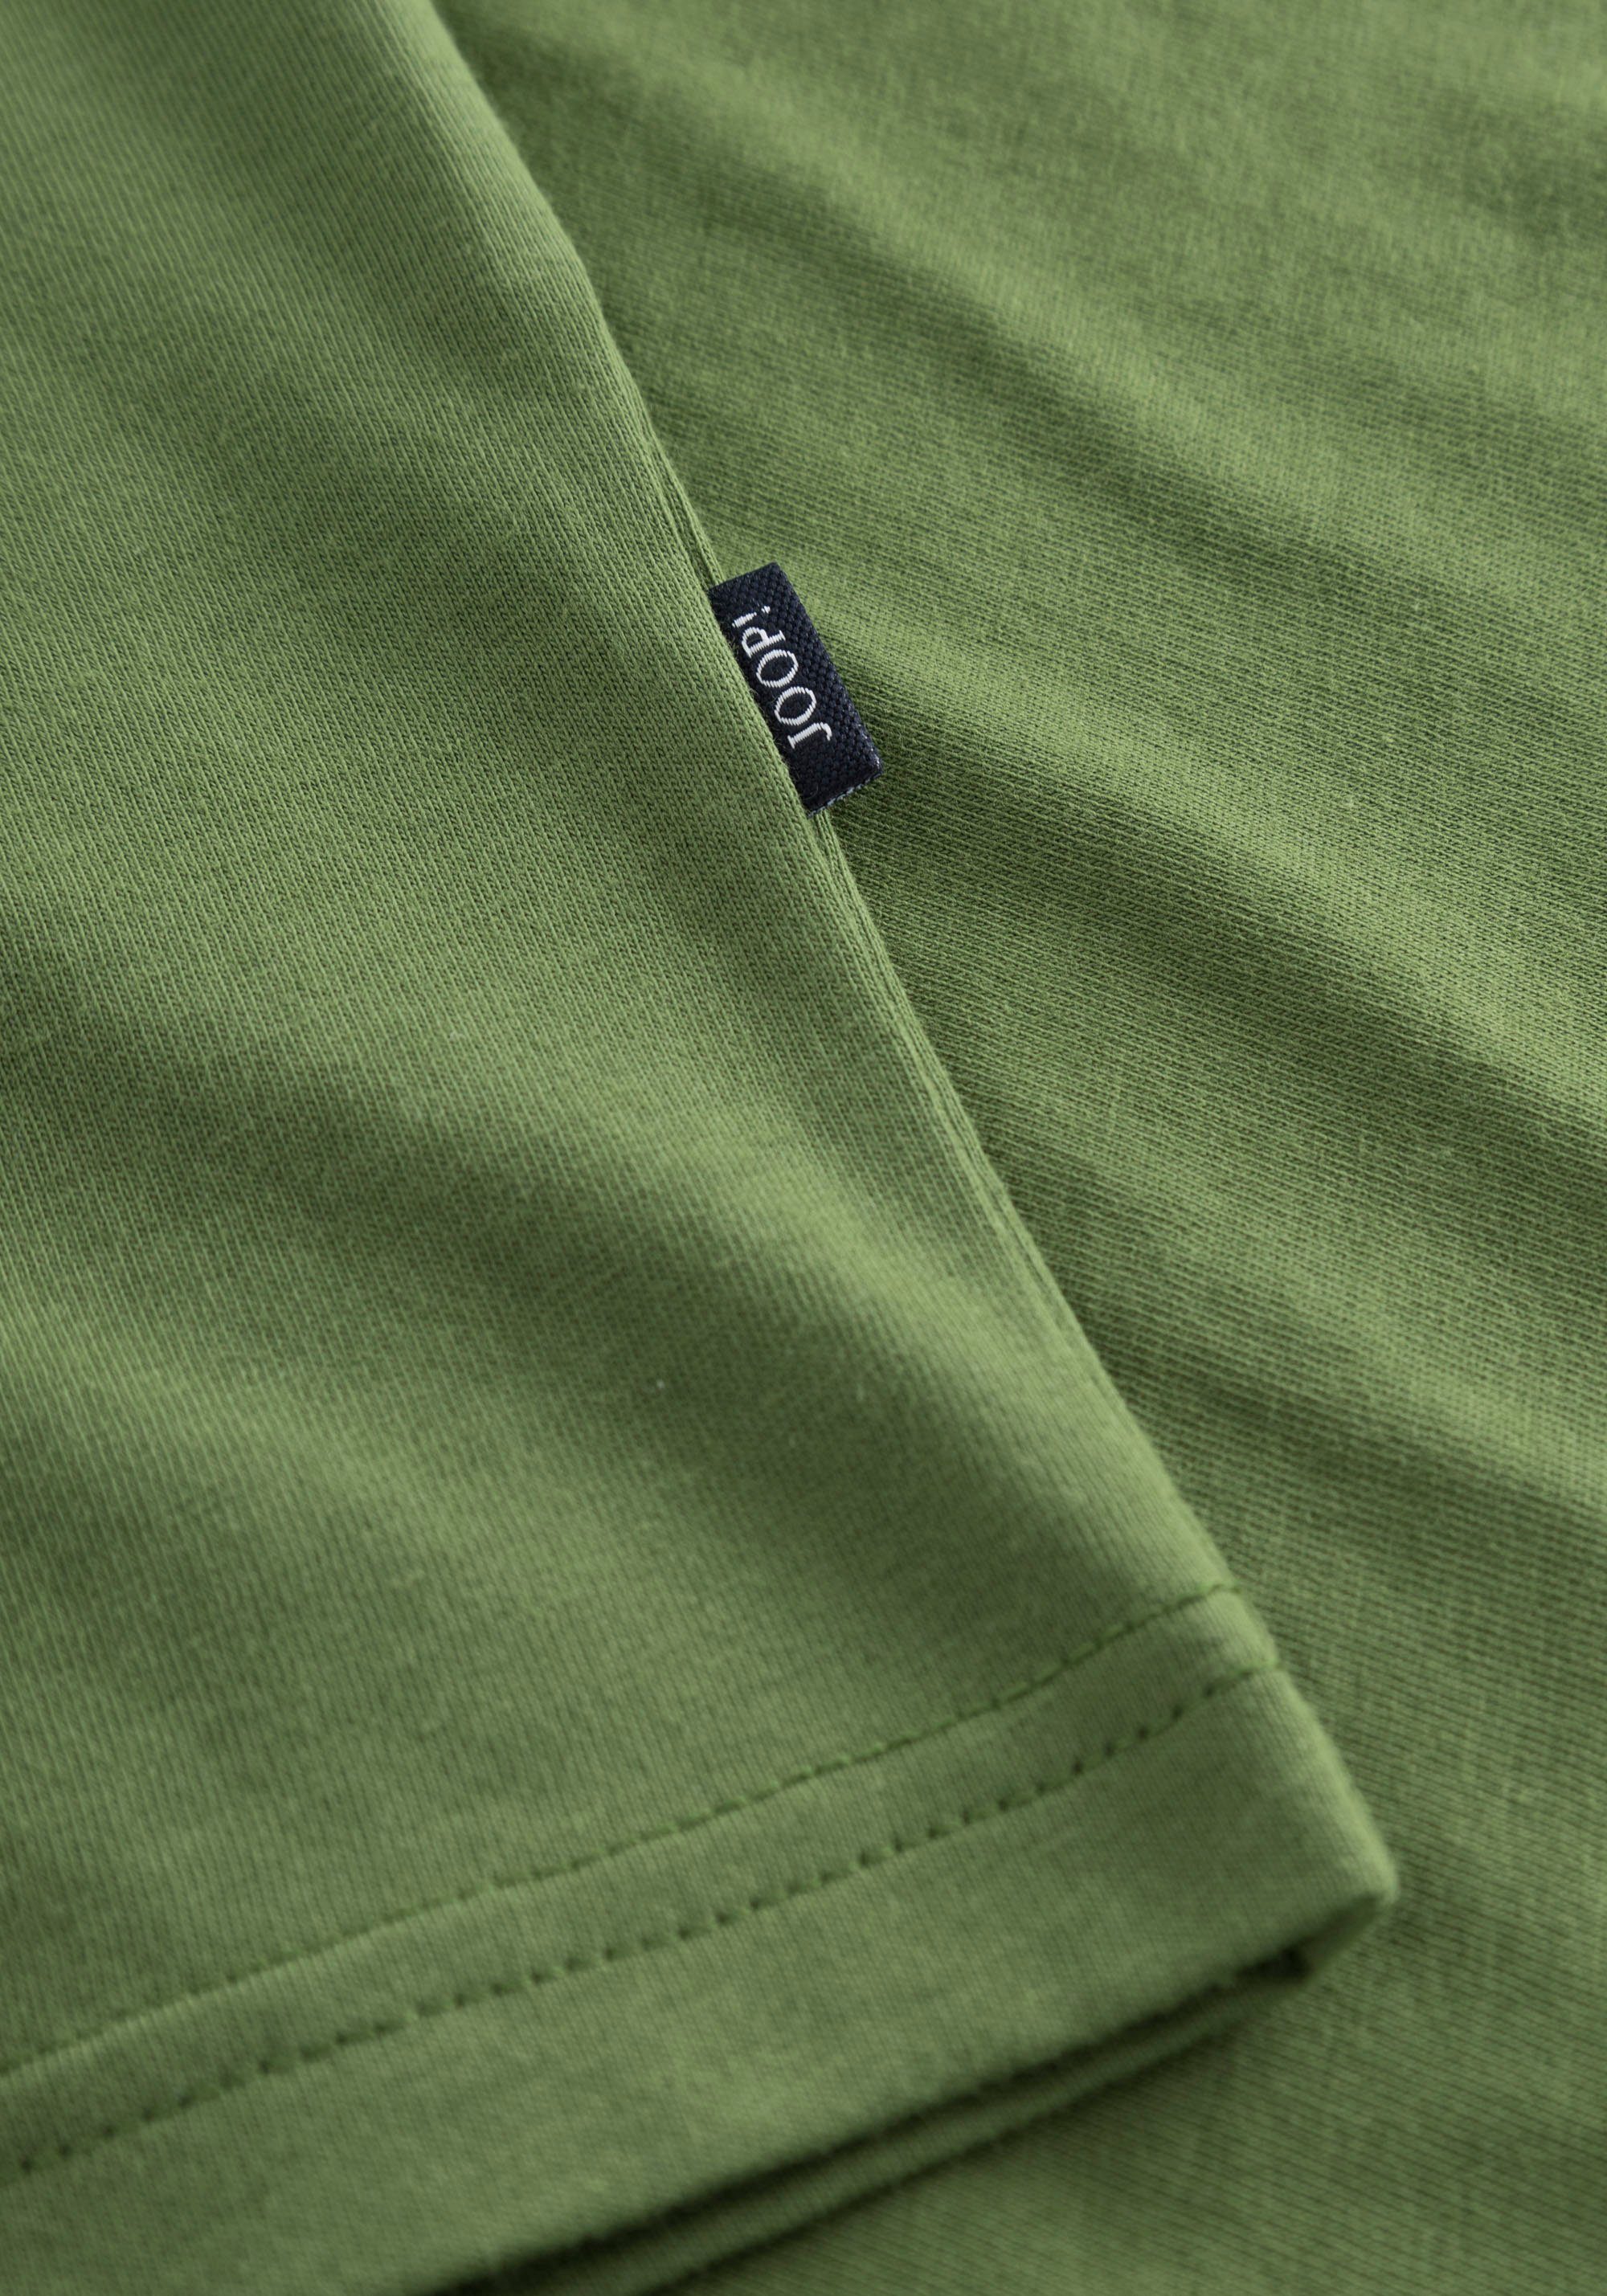 Rundhalsshirt mit Green Joop JJJ-09Alex Jeans Bright Logo-Frontprint